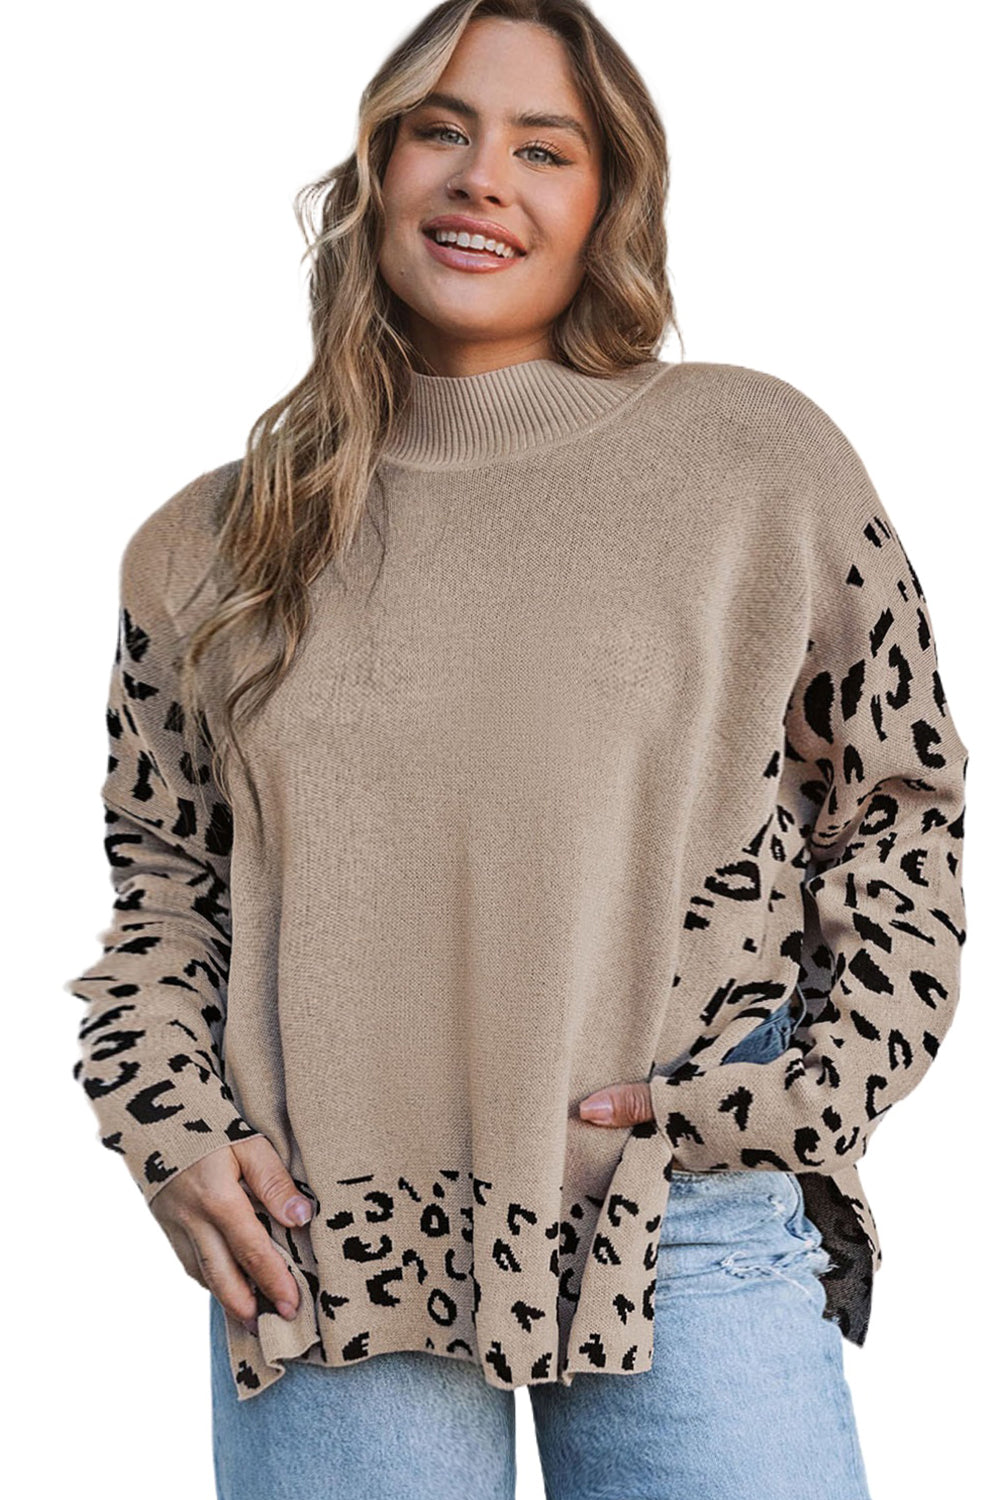 Kaki pulover z visokim ovratnikom v velikosti Leopard Patchwork